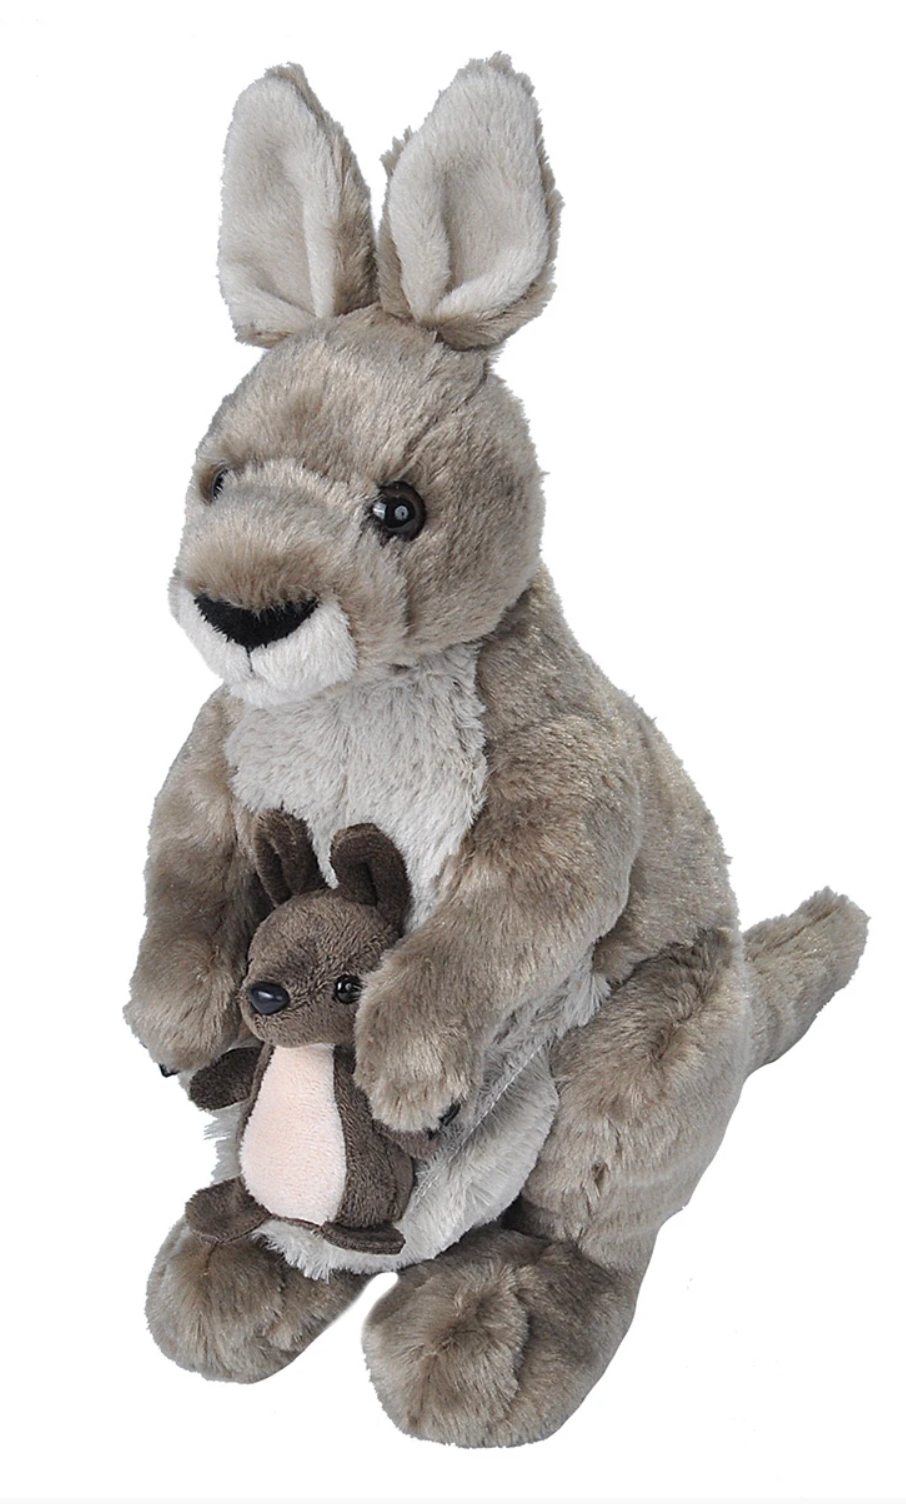 Kangaroo Stuffed Animal - 12"